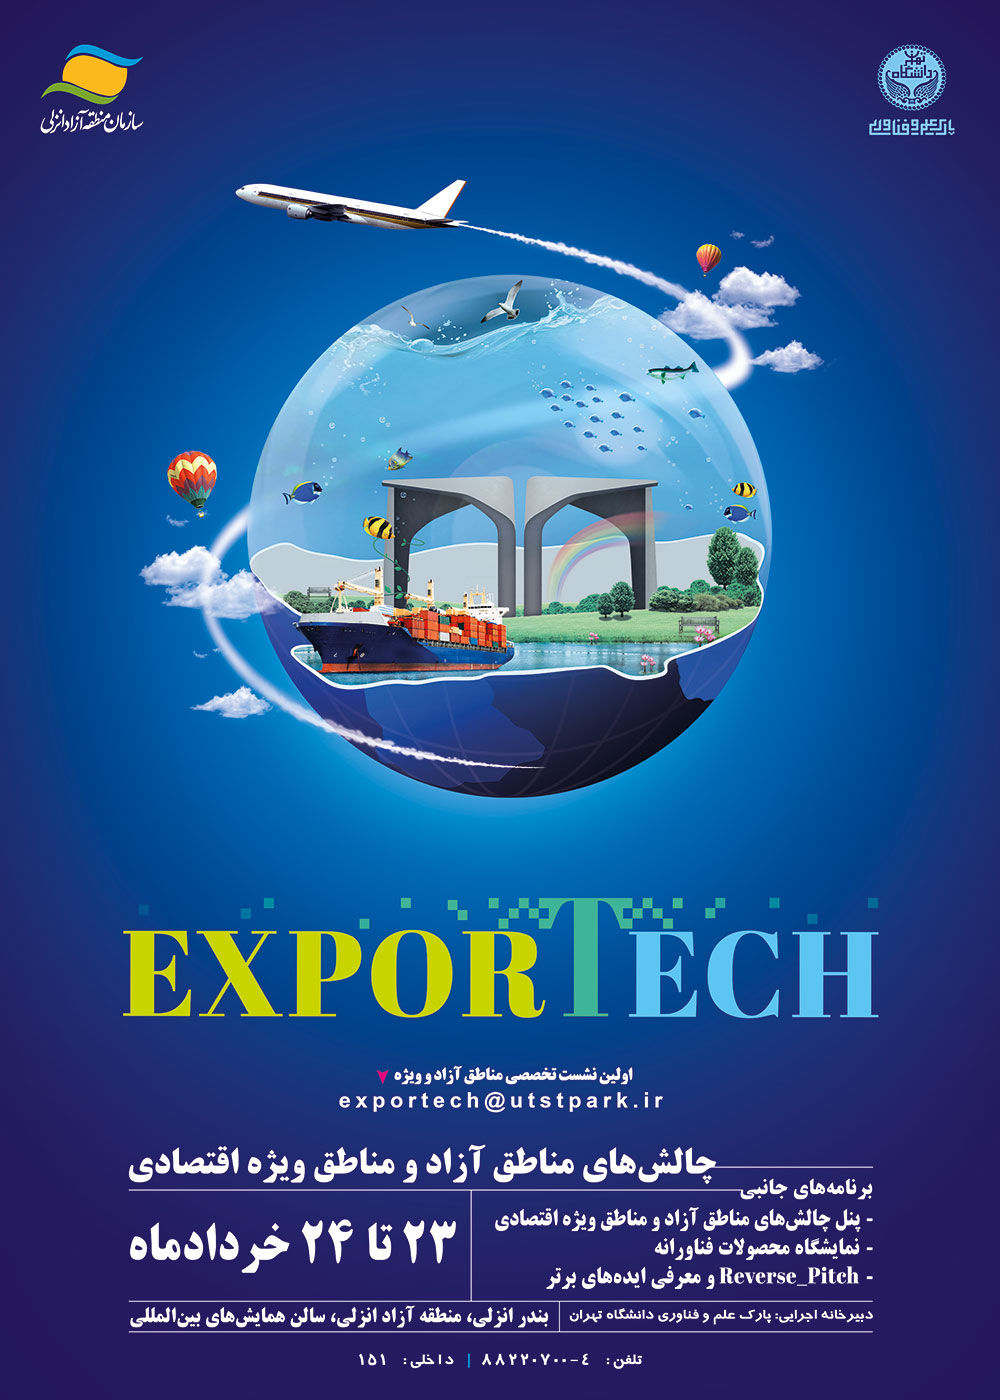 ثبت‌نام نشست تخصصی مناطق آزاد و ویژه EXPORTECH از سوی پارک علم و فناوری دانشگاه تهران آغاز شد